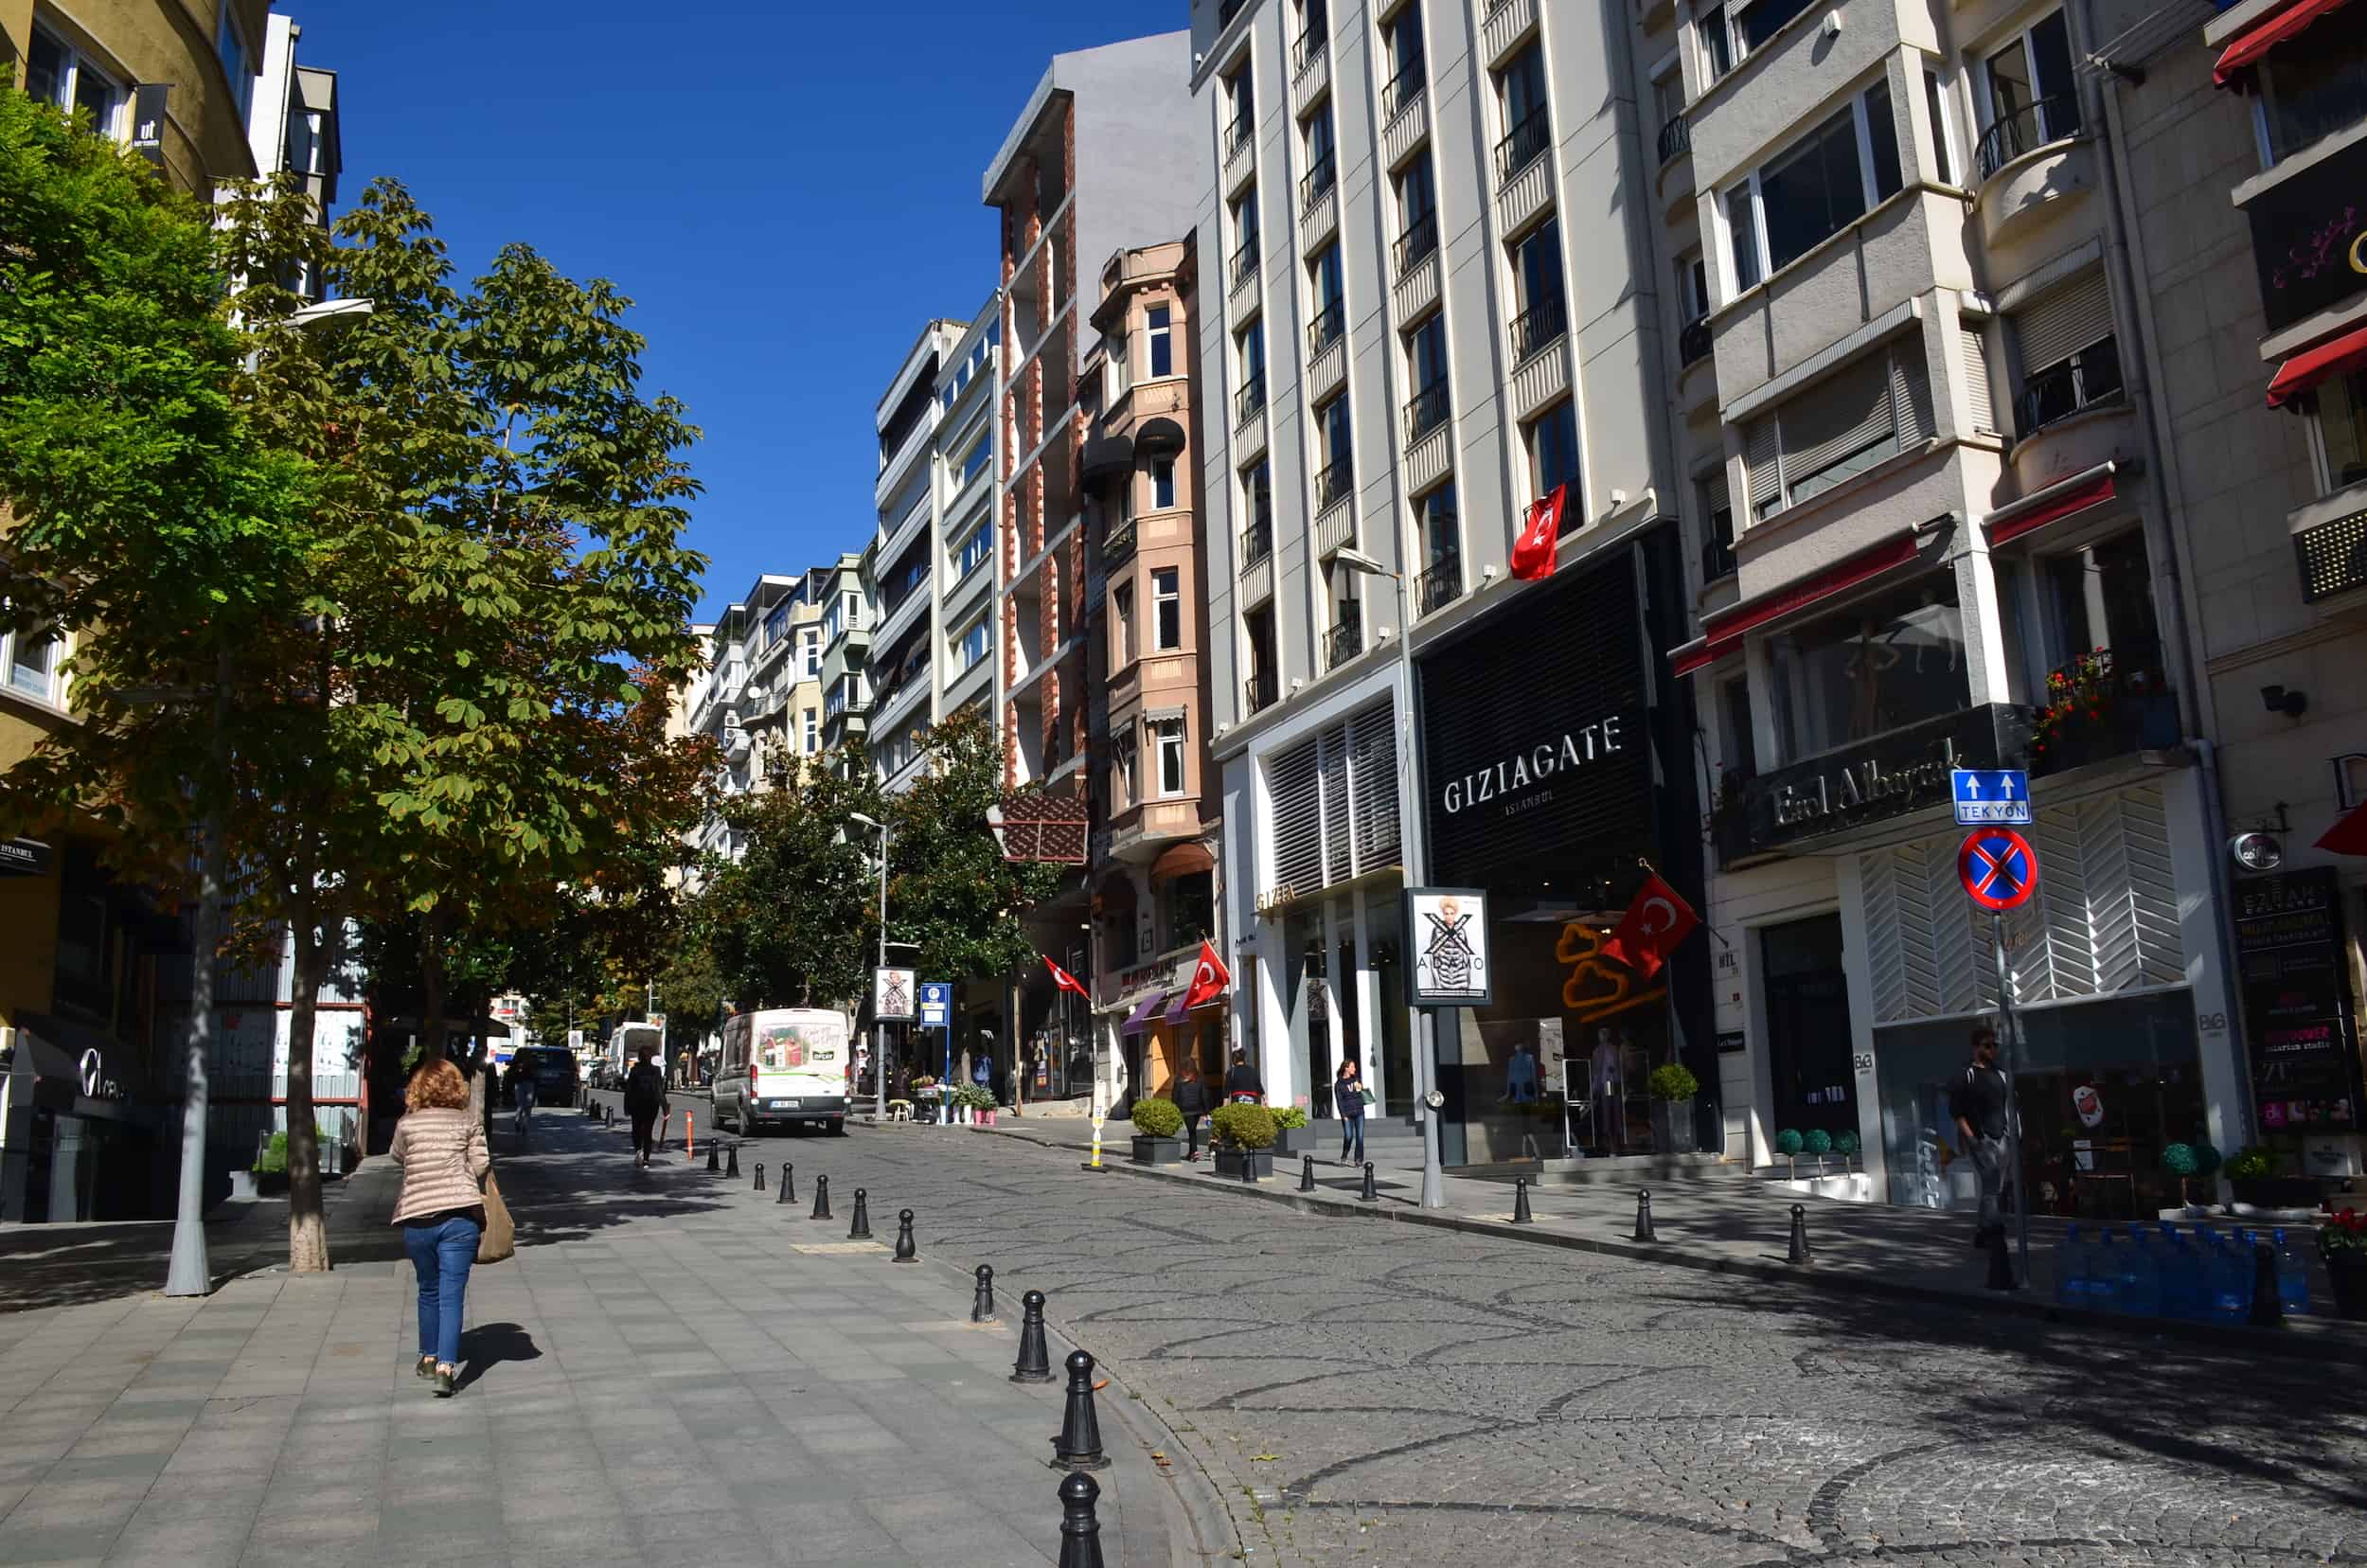 Nisantasi Luxury Place Istanbul 2022 6 November Walking Tour